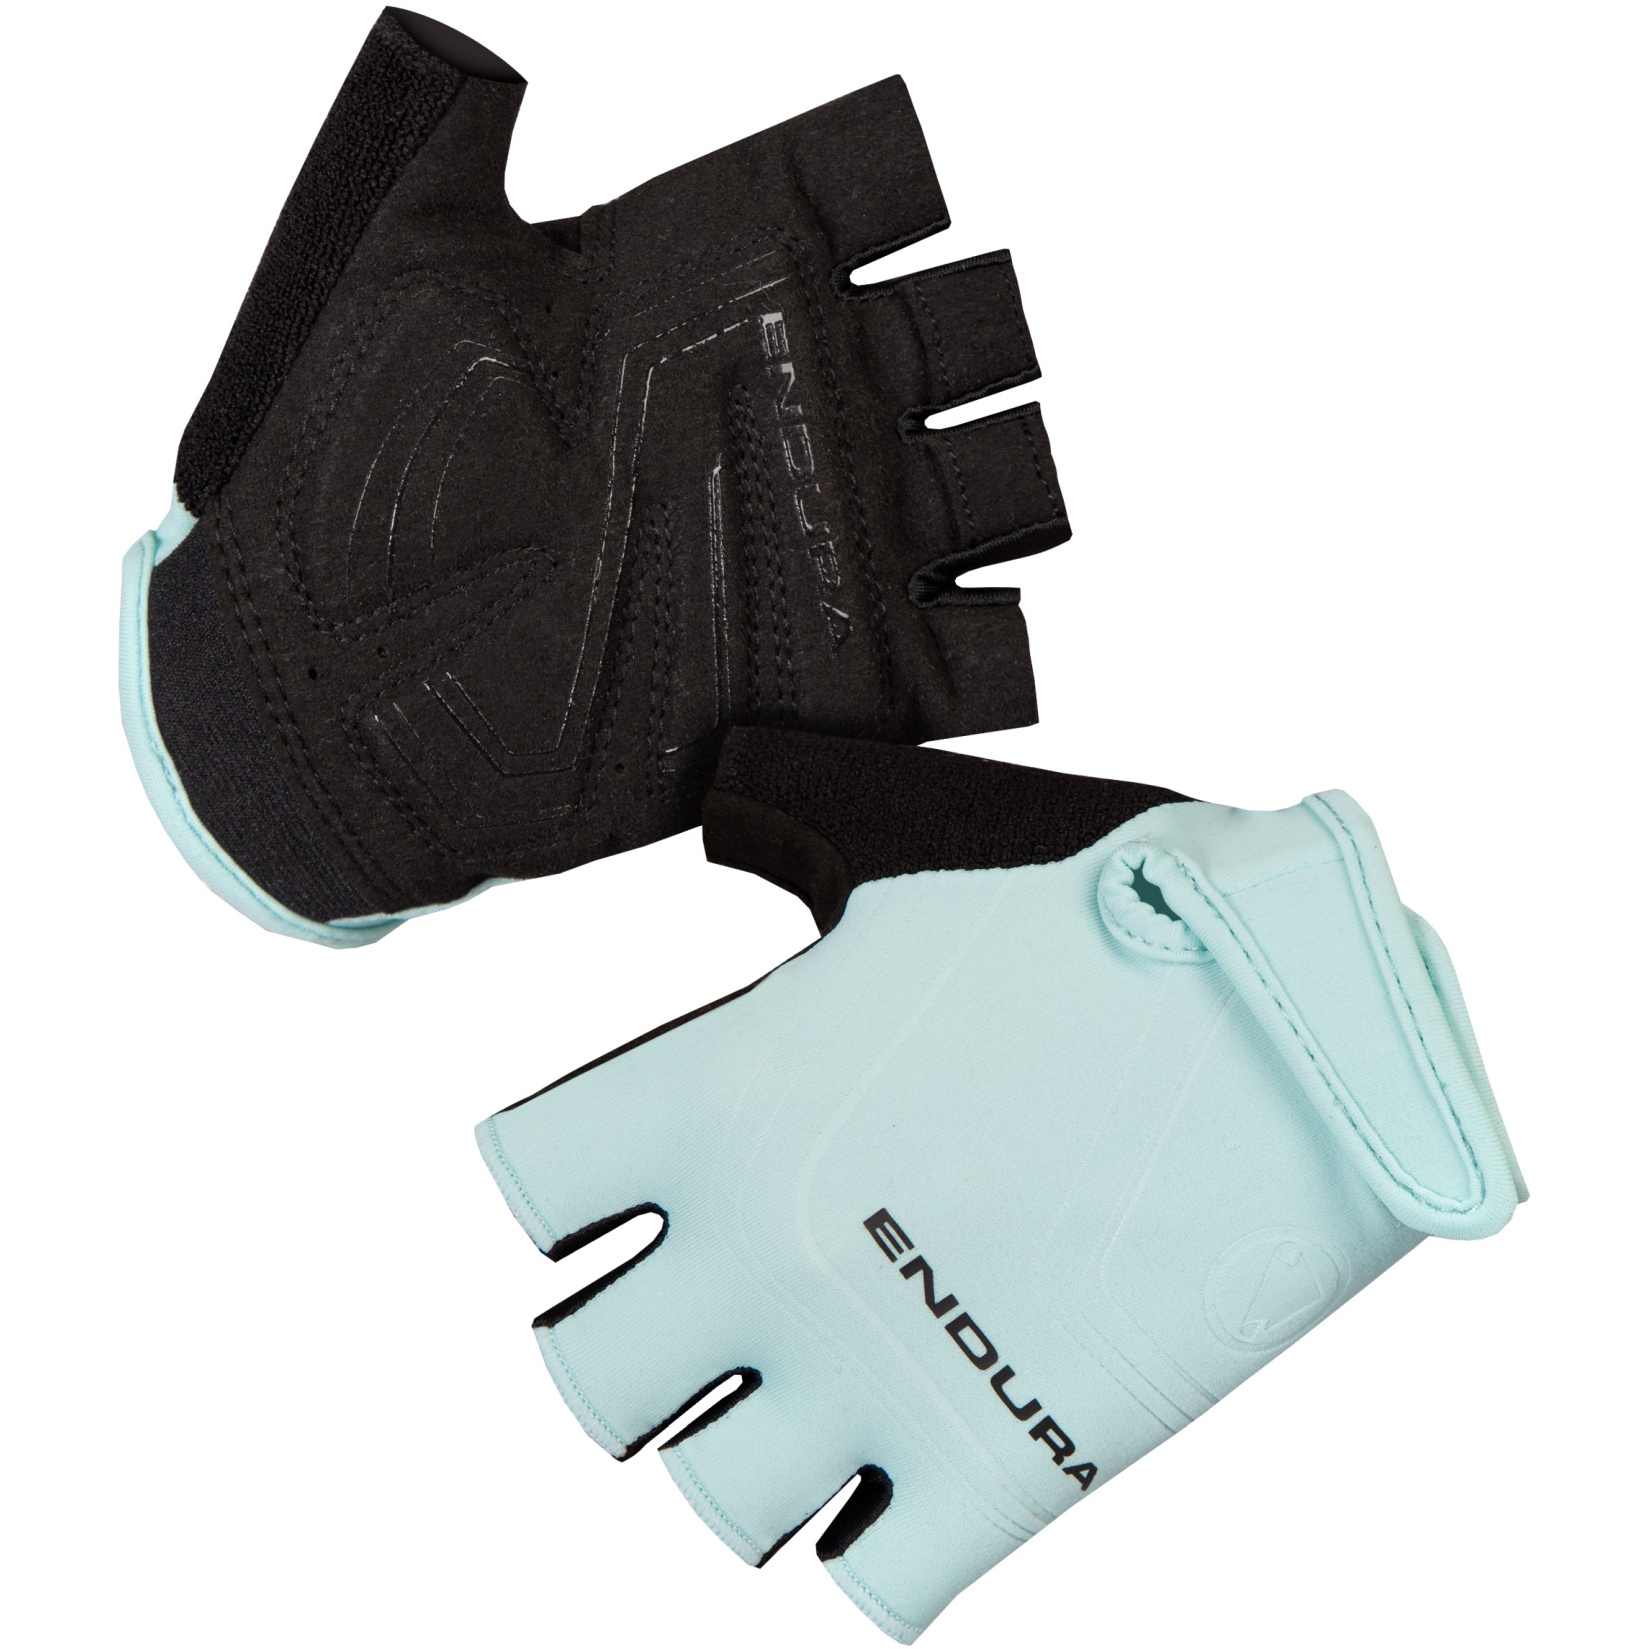 Produktbild von Endura Xtract Damen Kurzfinger-Handschuhe - glacier blue